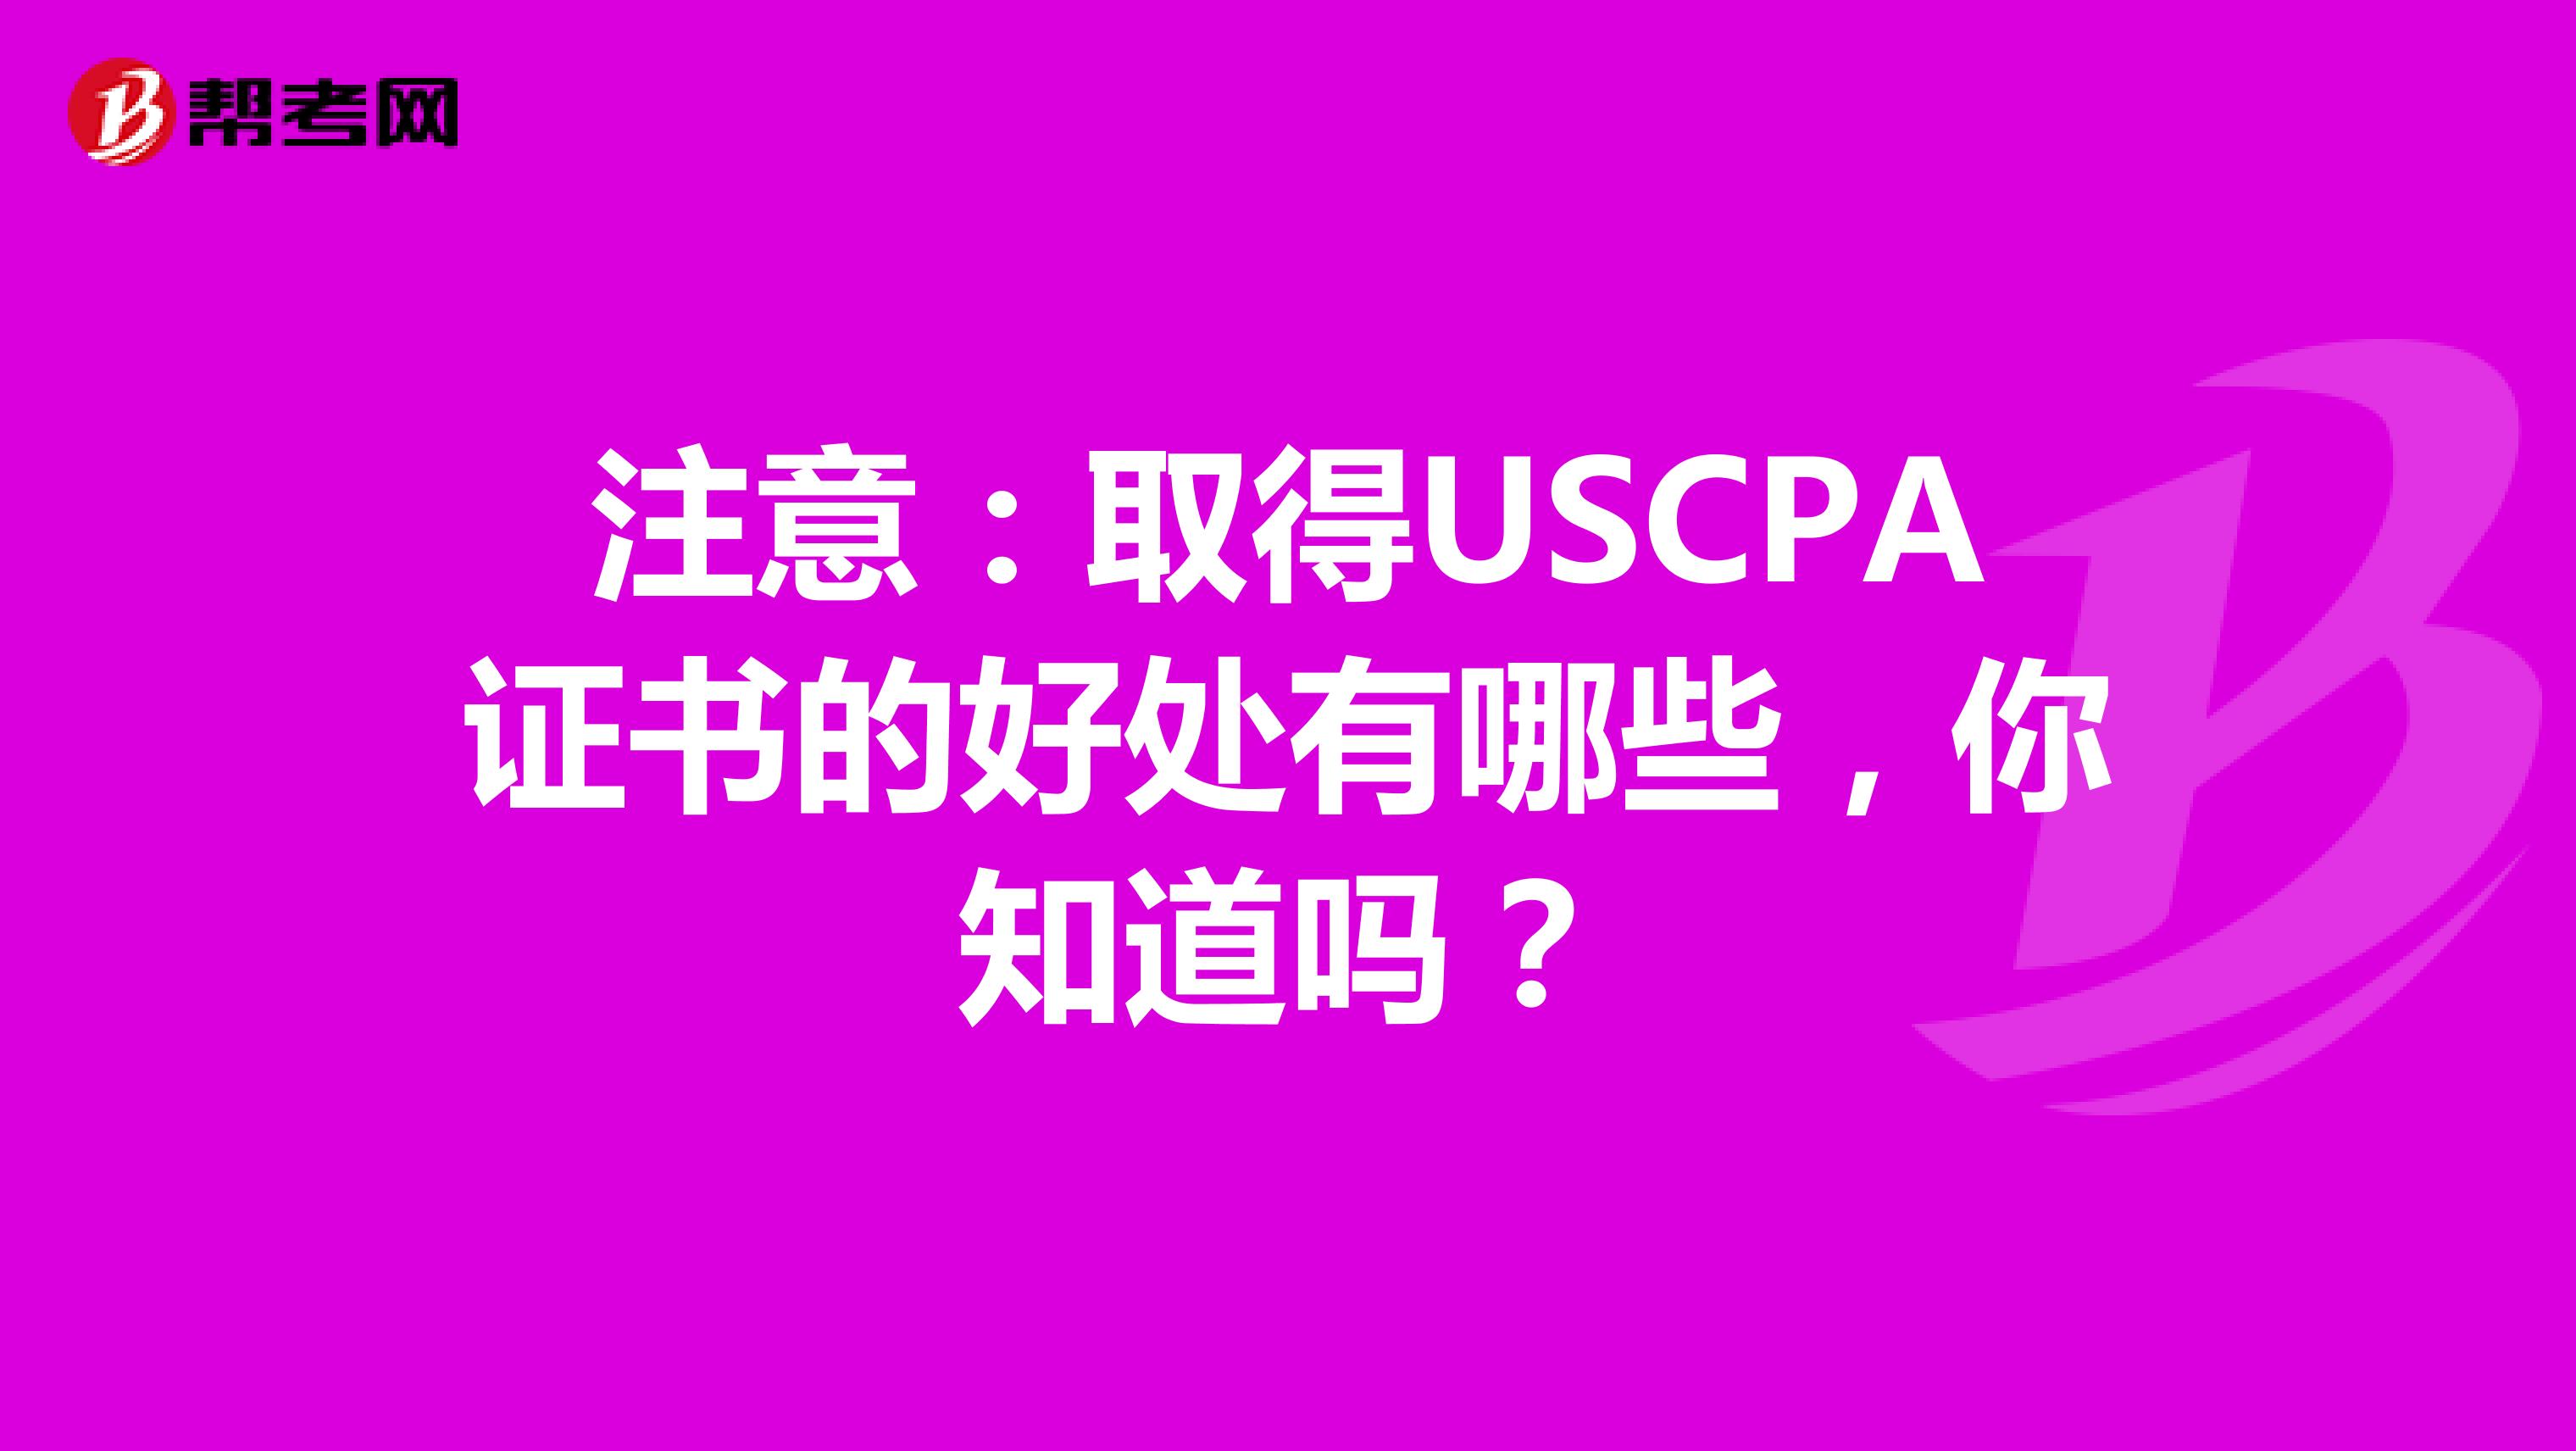 注意：取得USCPA证书的好处有哪些，你知道吗？